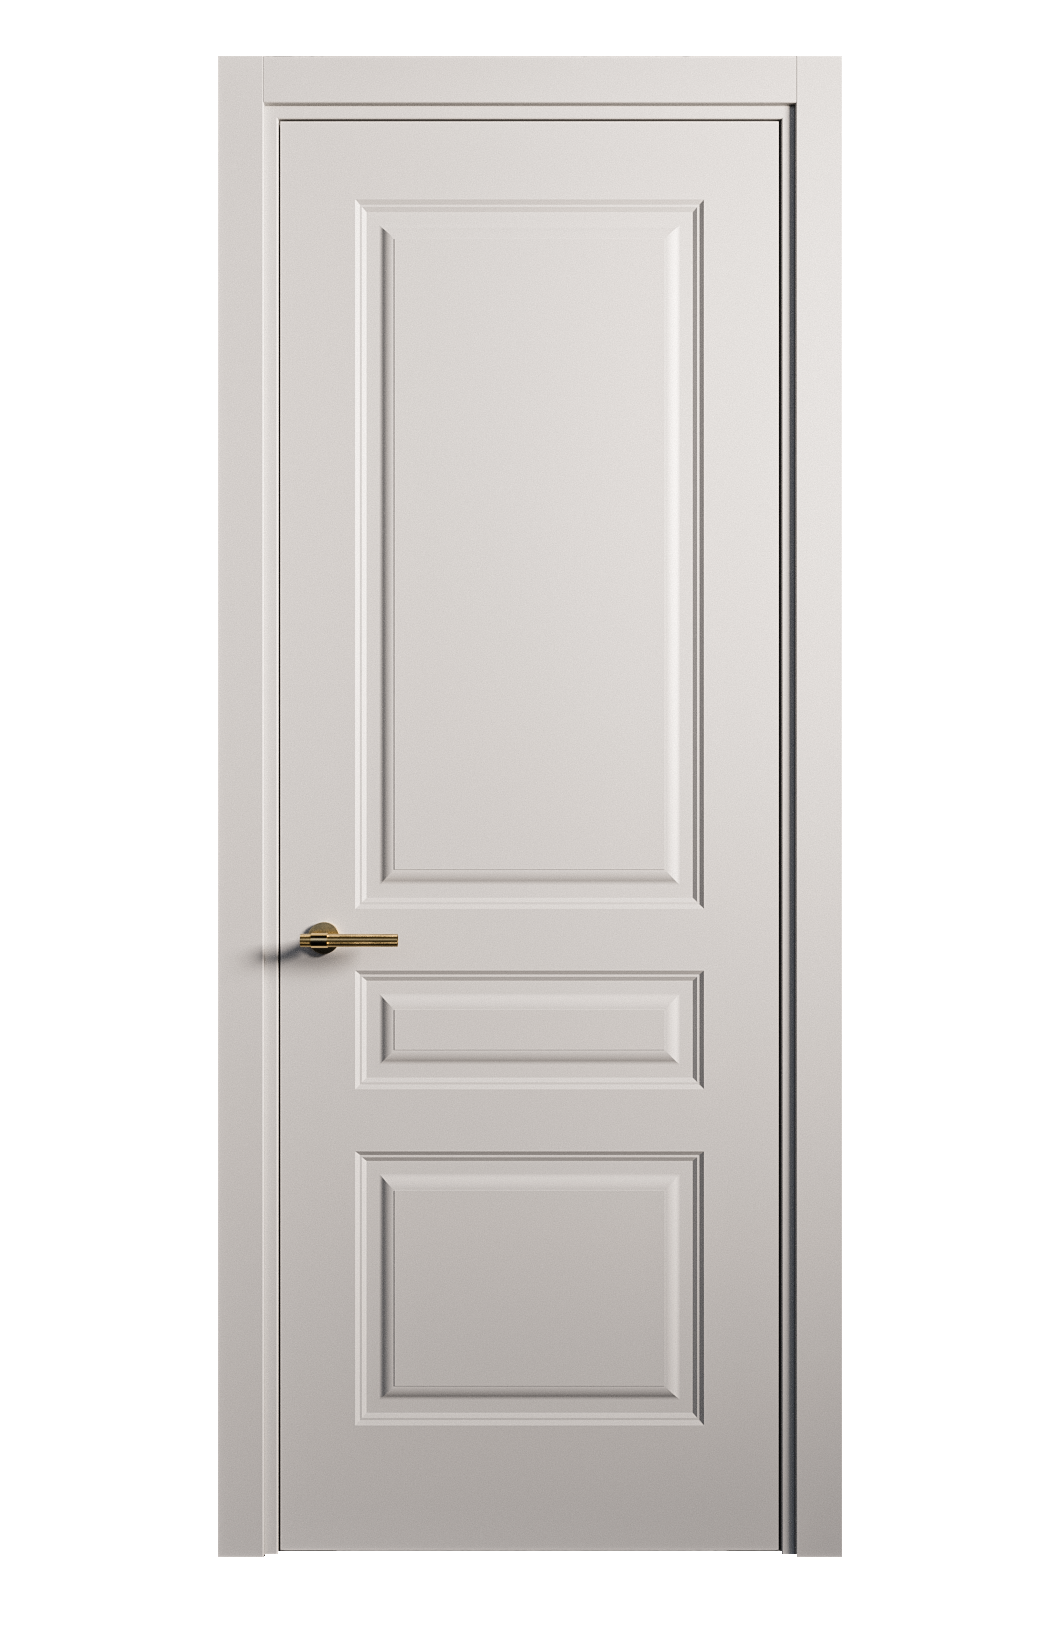 Межкомнатная дверь Вита-2 глухая эмаль ral 7047 26347